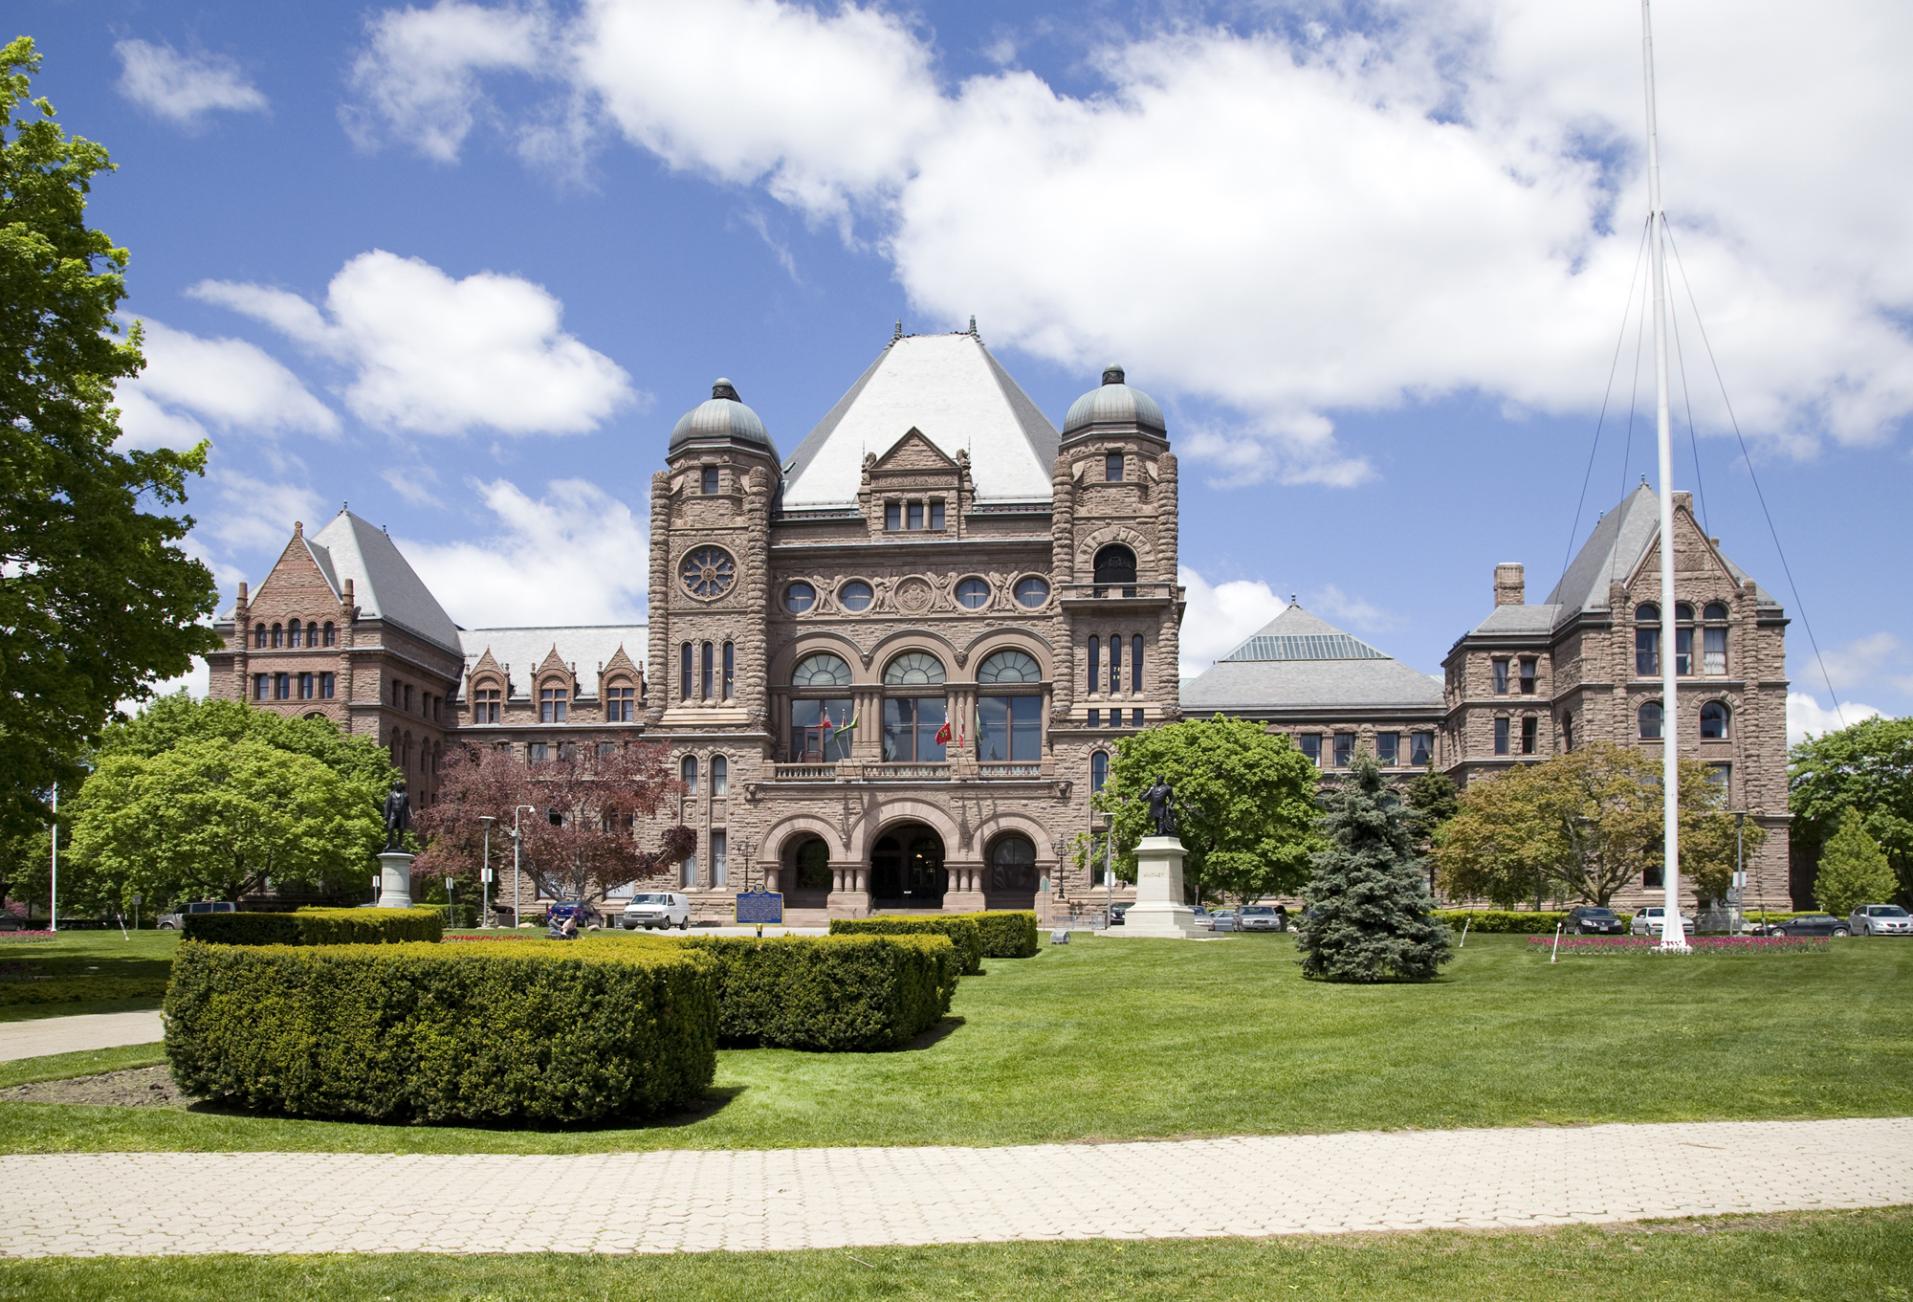 Legislative Building, Toronto, Ontario